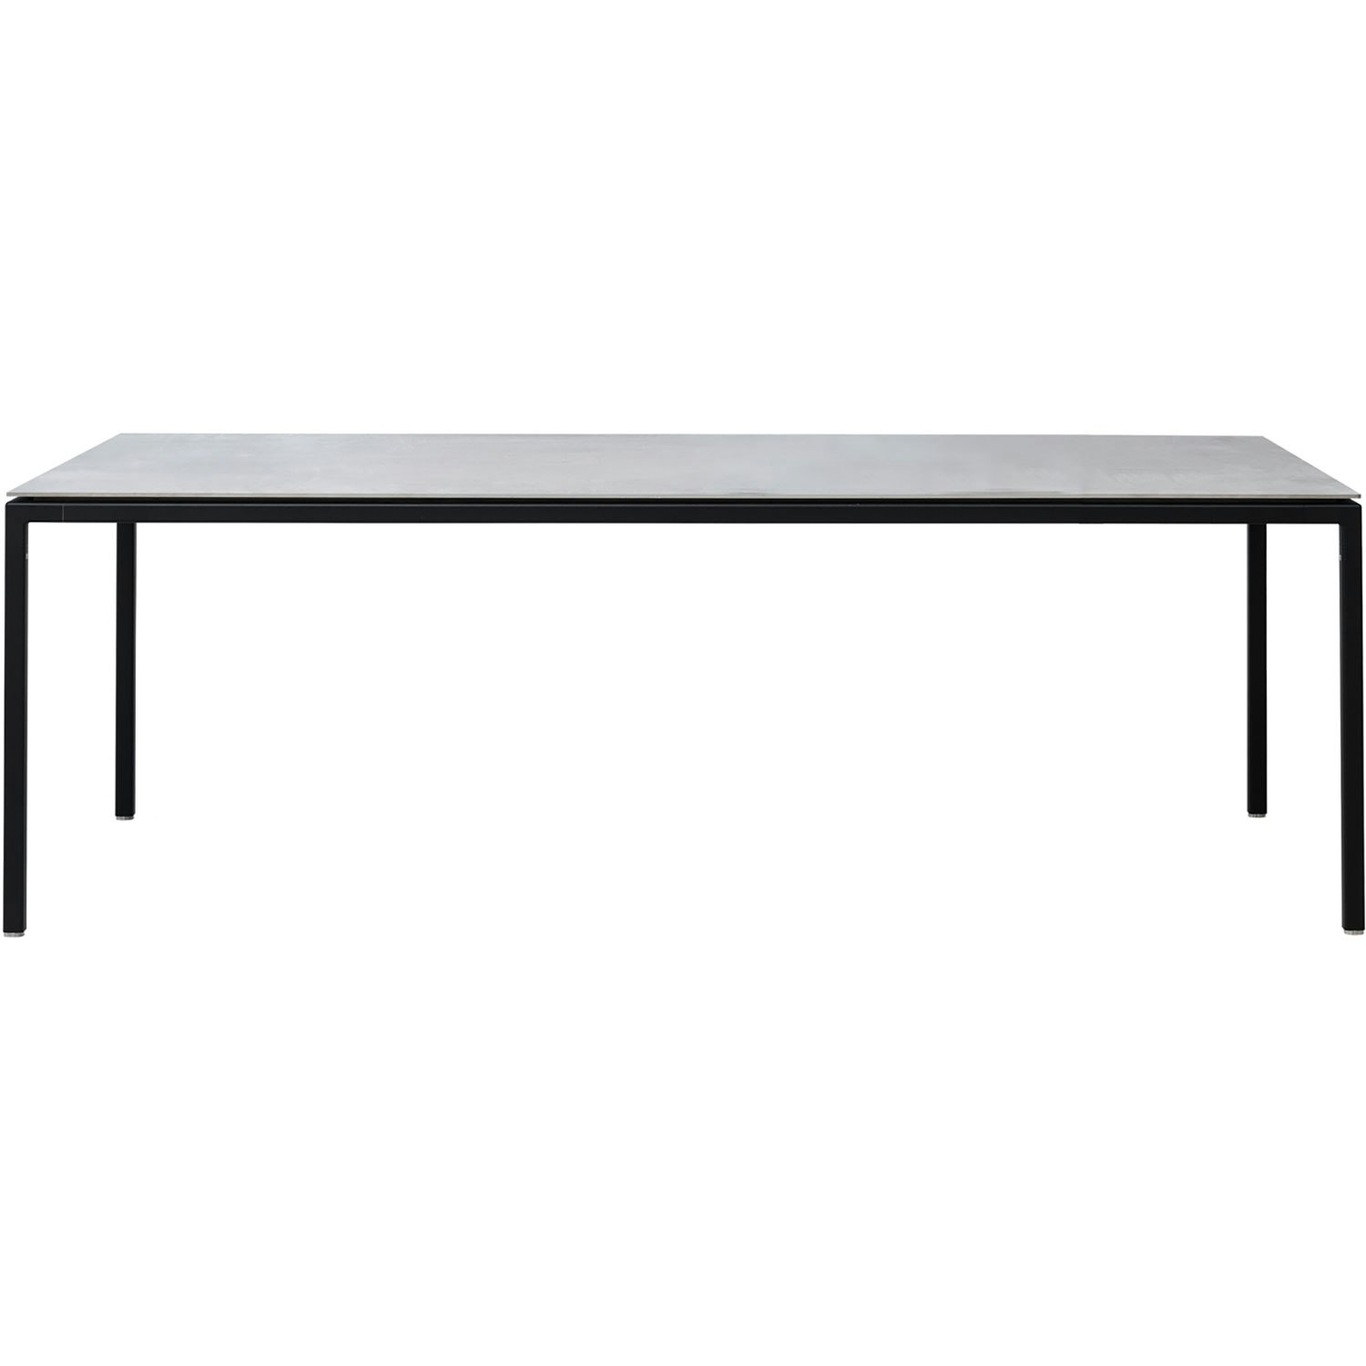 Vipp971 Table 200x95cm medium